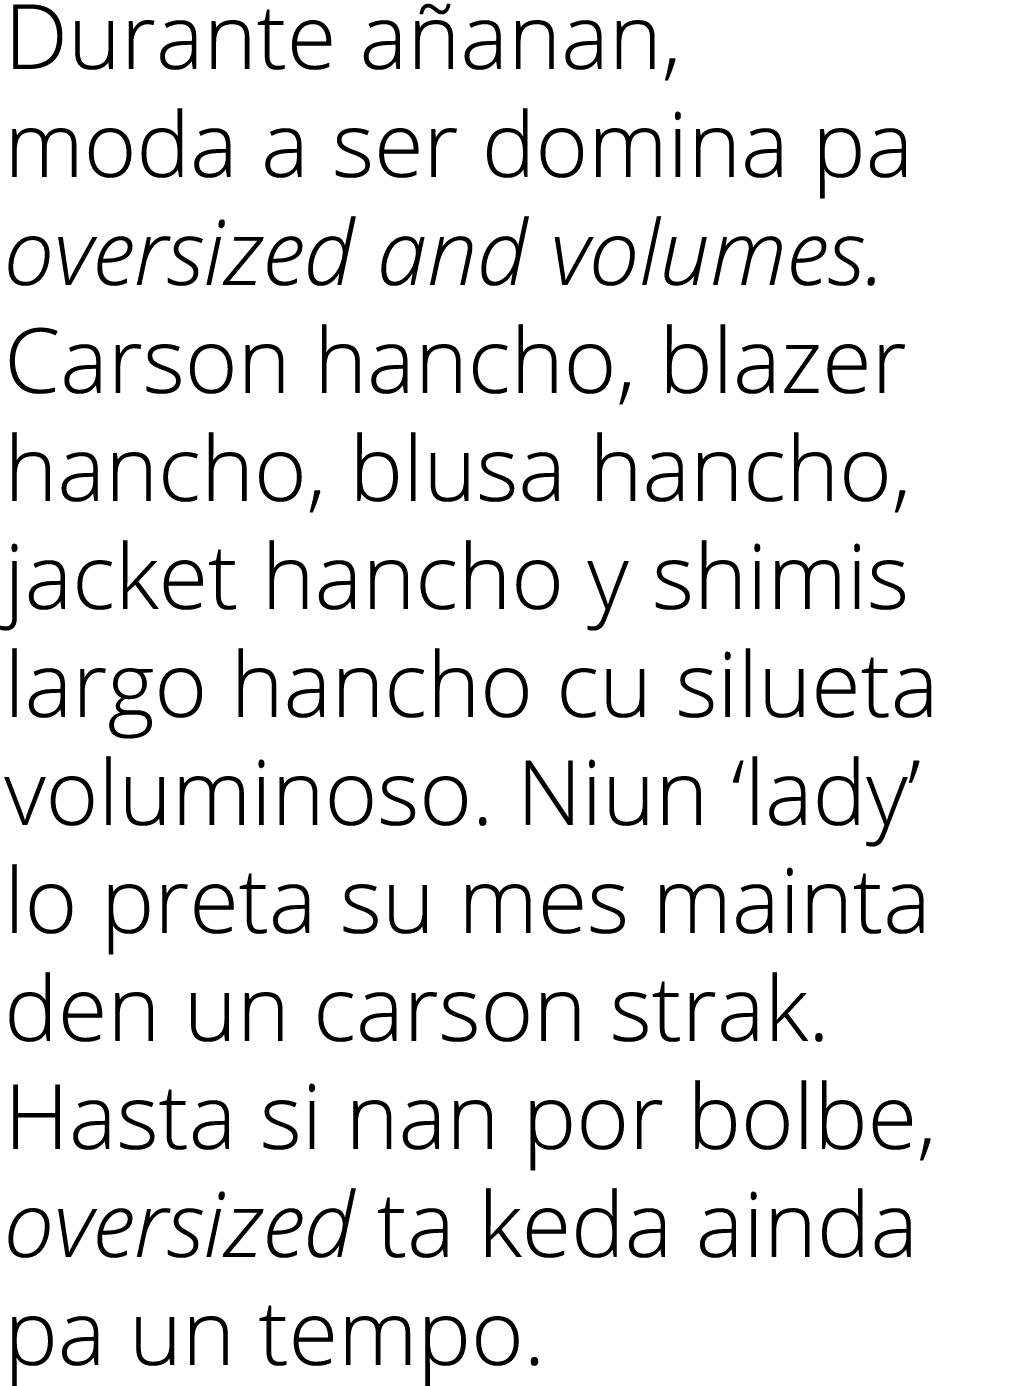 Durante a anan, moda a ser domina pa oversized and volumes. Carson hancho, blazer hancho, blusa hancho, jacket hancho...